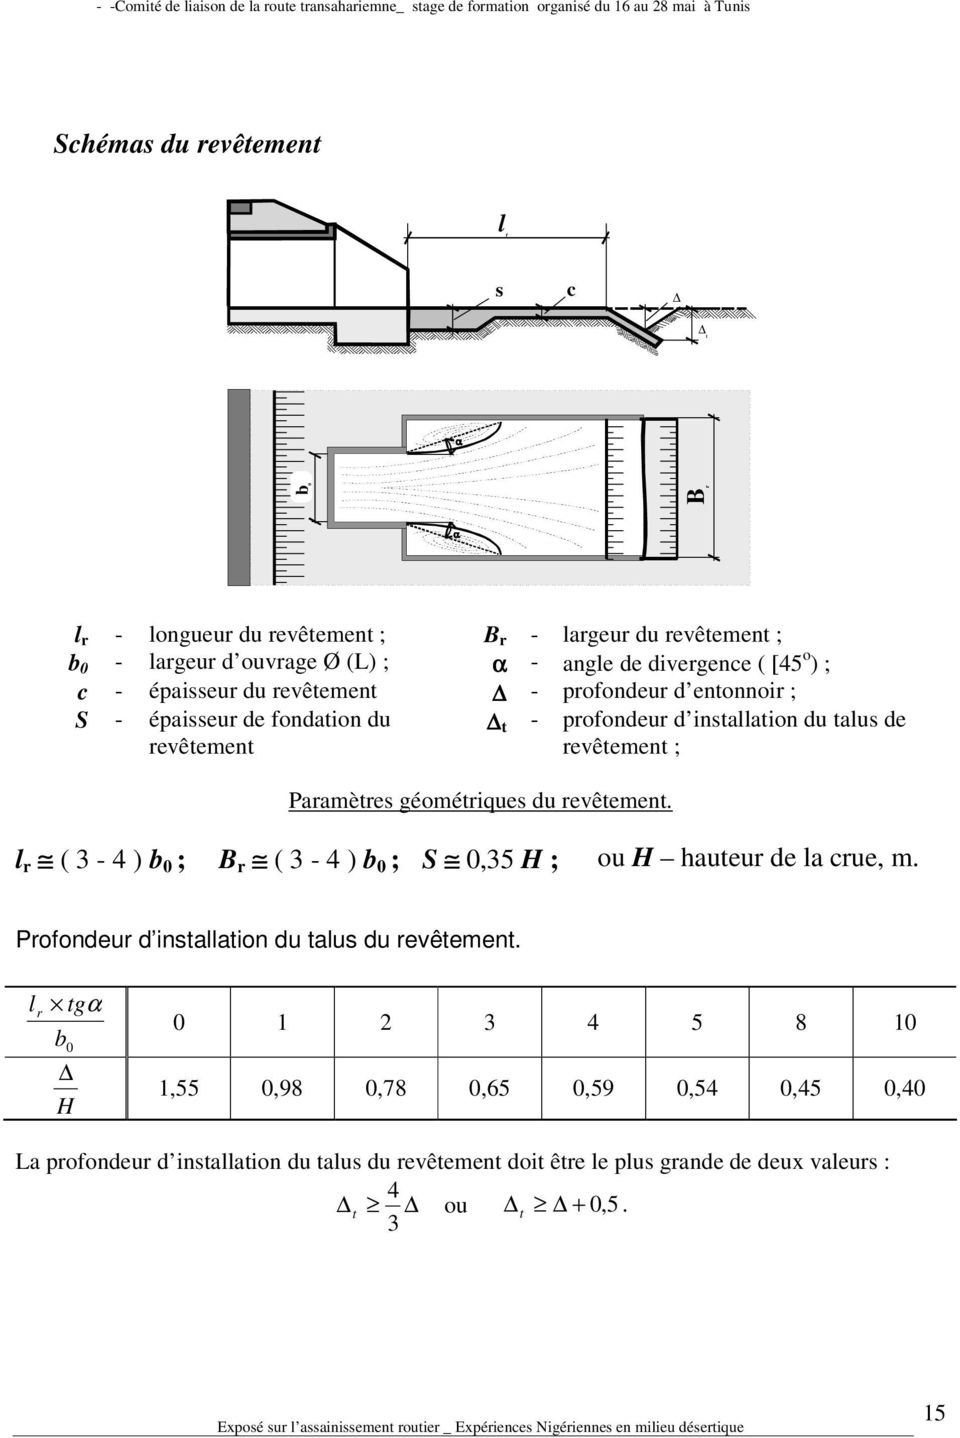 géométriques du revêtement. t - profondeur d installation du talus de revêtement ; l r ( 3-4 ) b 0 ; B r ( 3-4 ) b 0 ; S 0,35 H ; ou H hauteur de la crue, m.